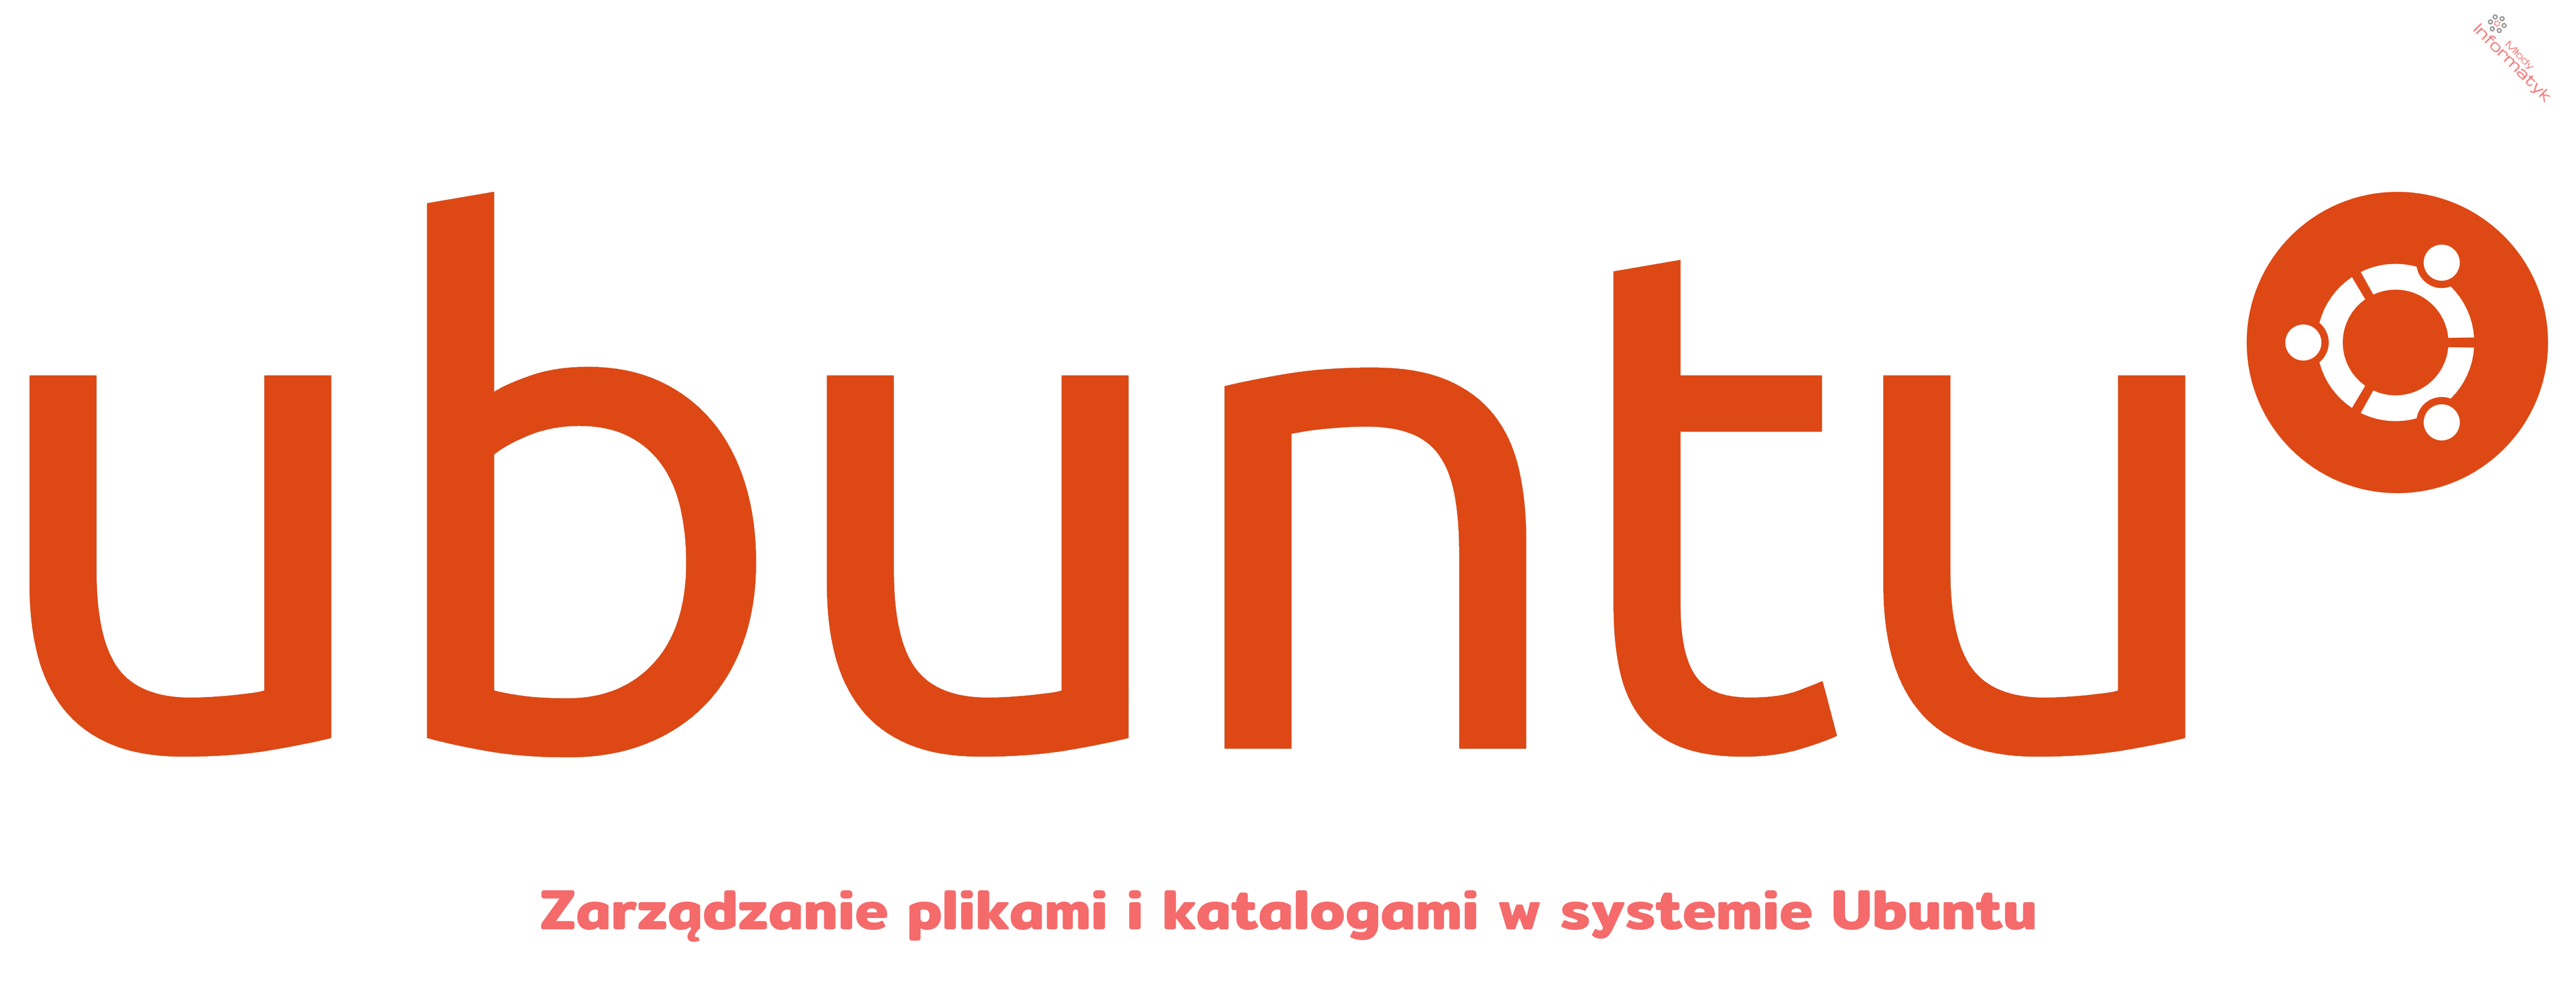 Zarządzanie plikami i katalogami w systemie Ubuntu